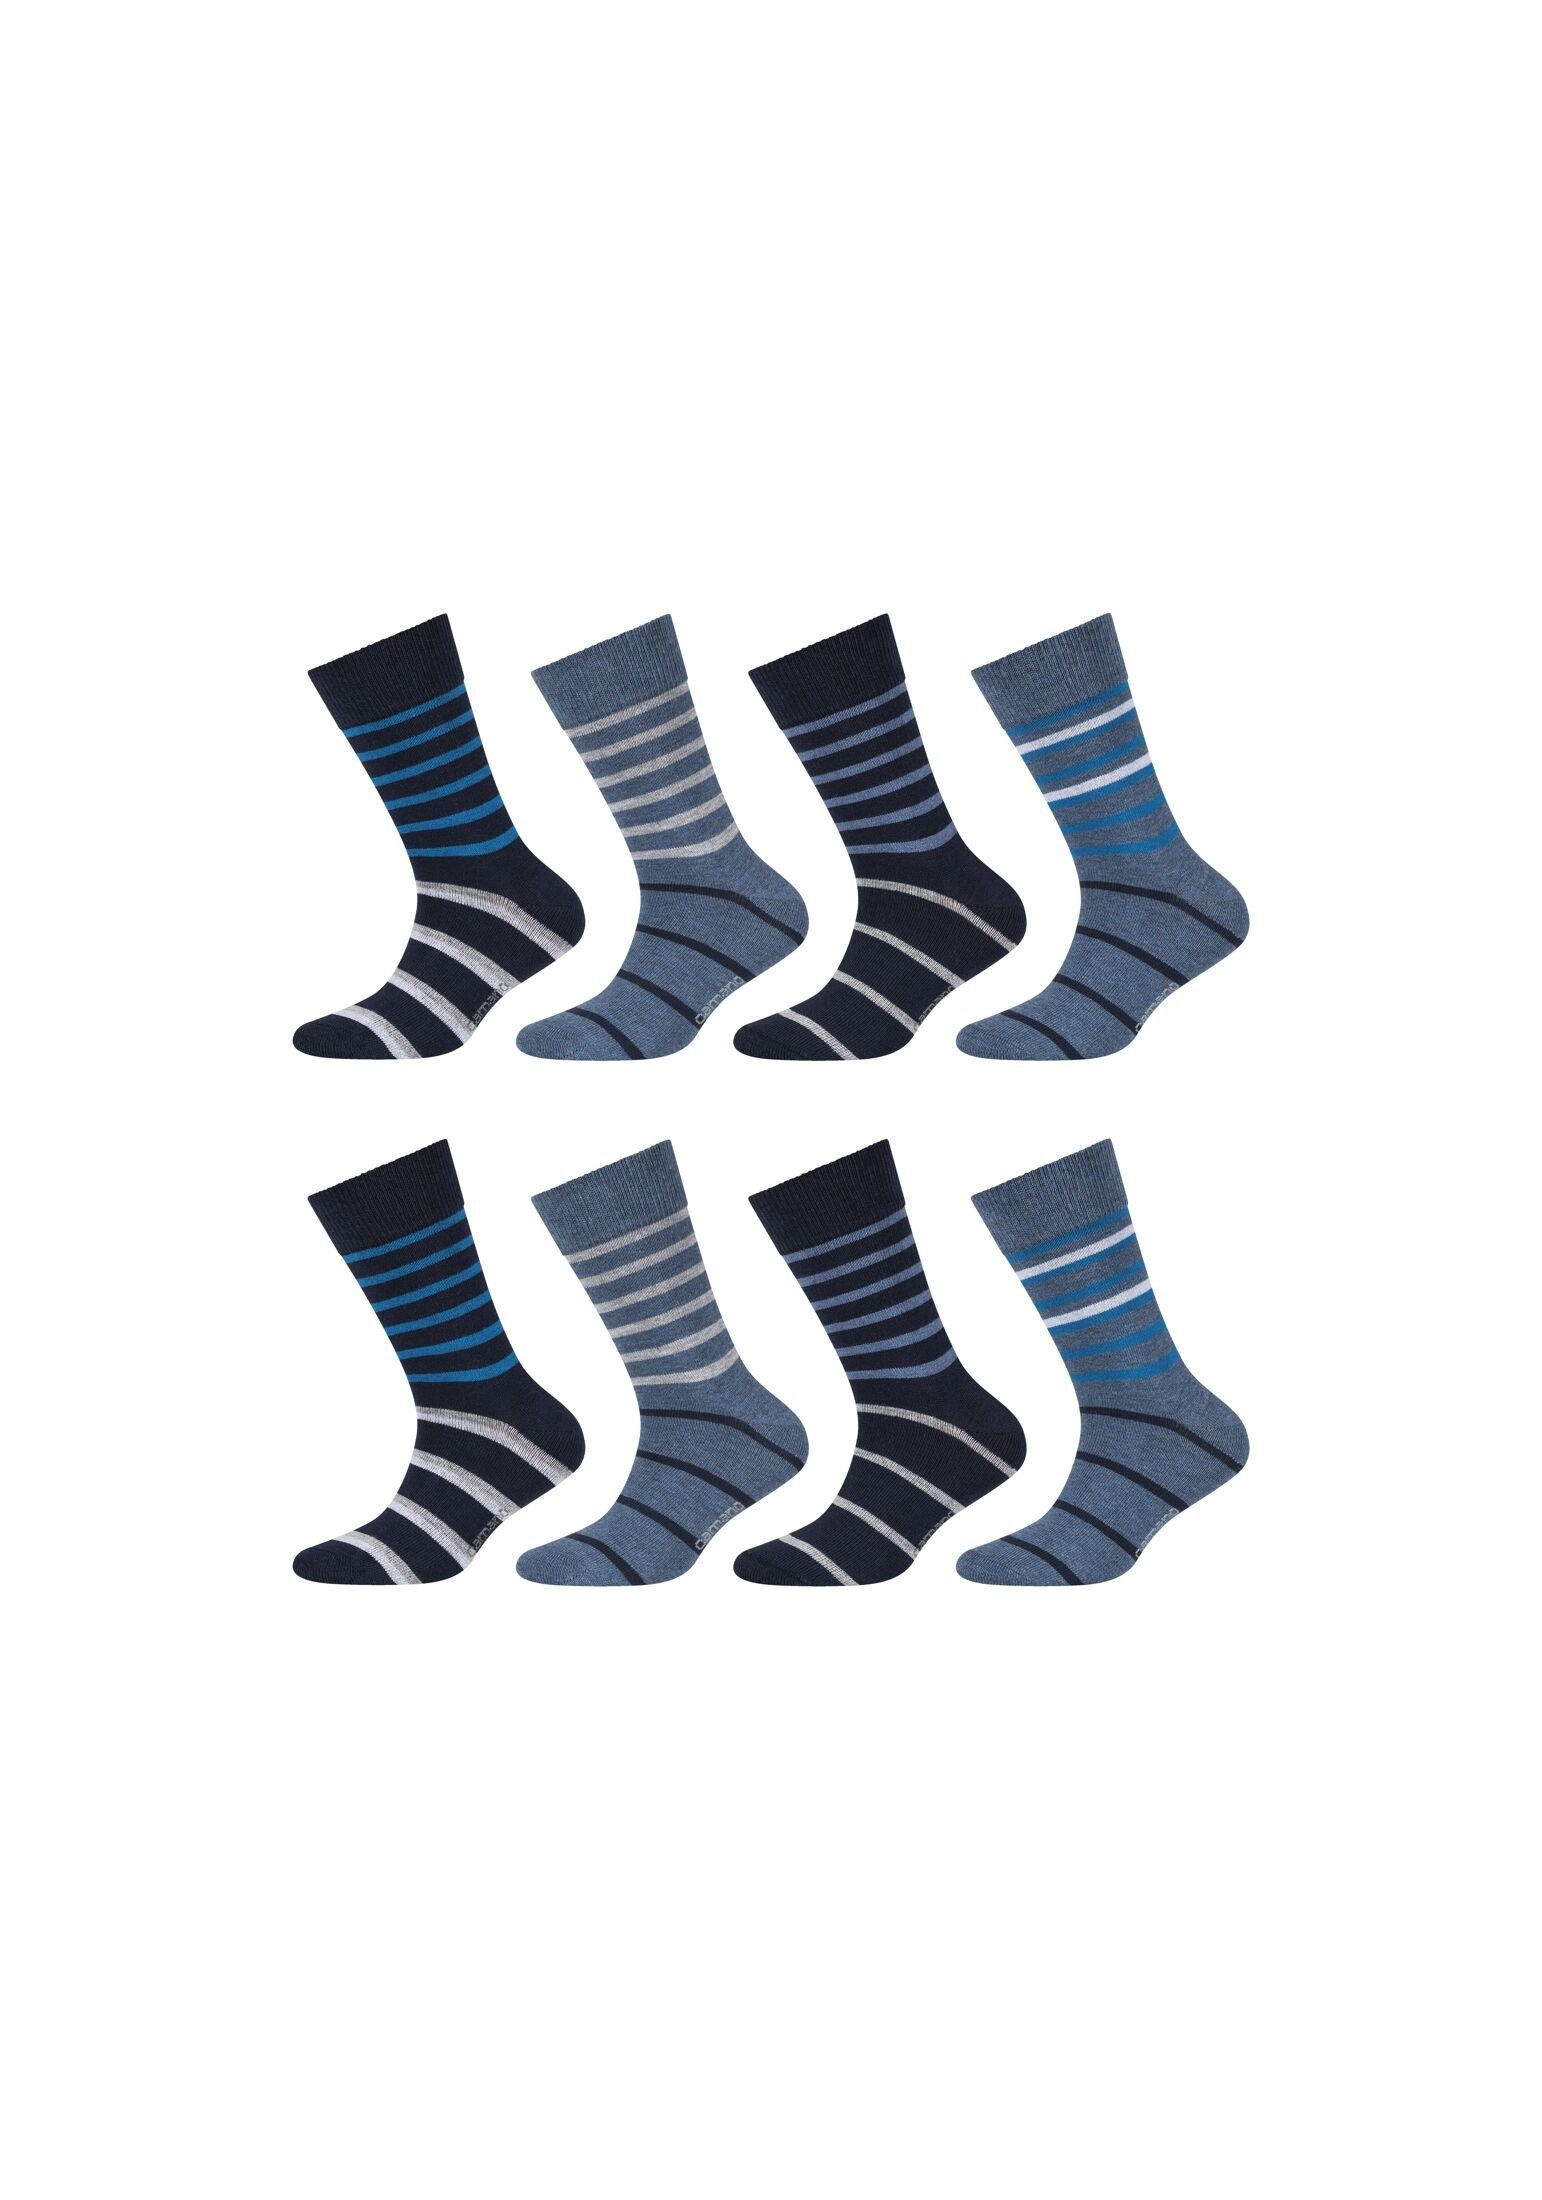 Socken blue Pack 8er Camano Socken